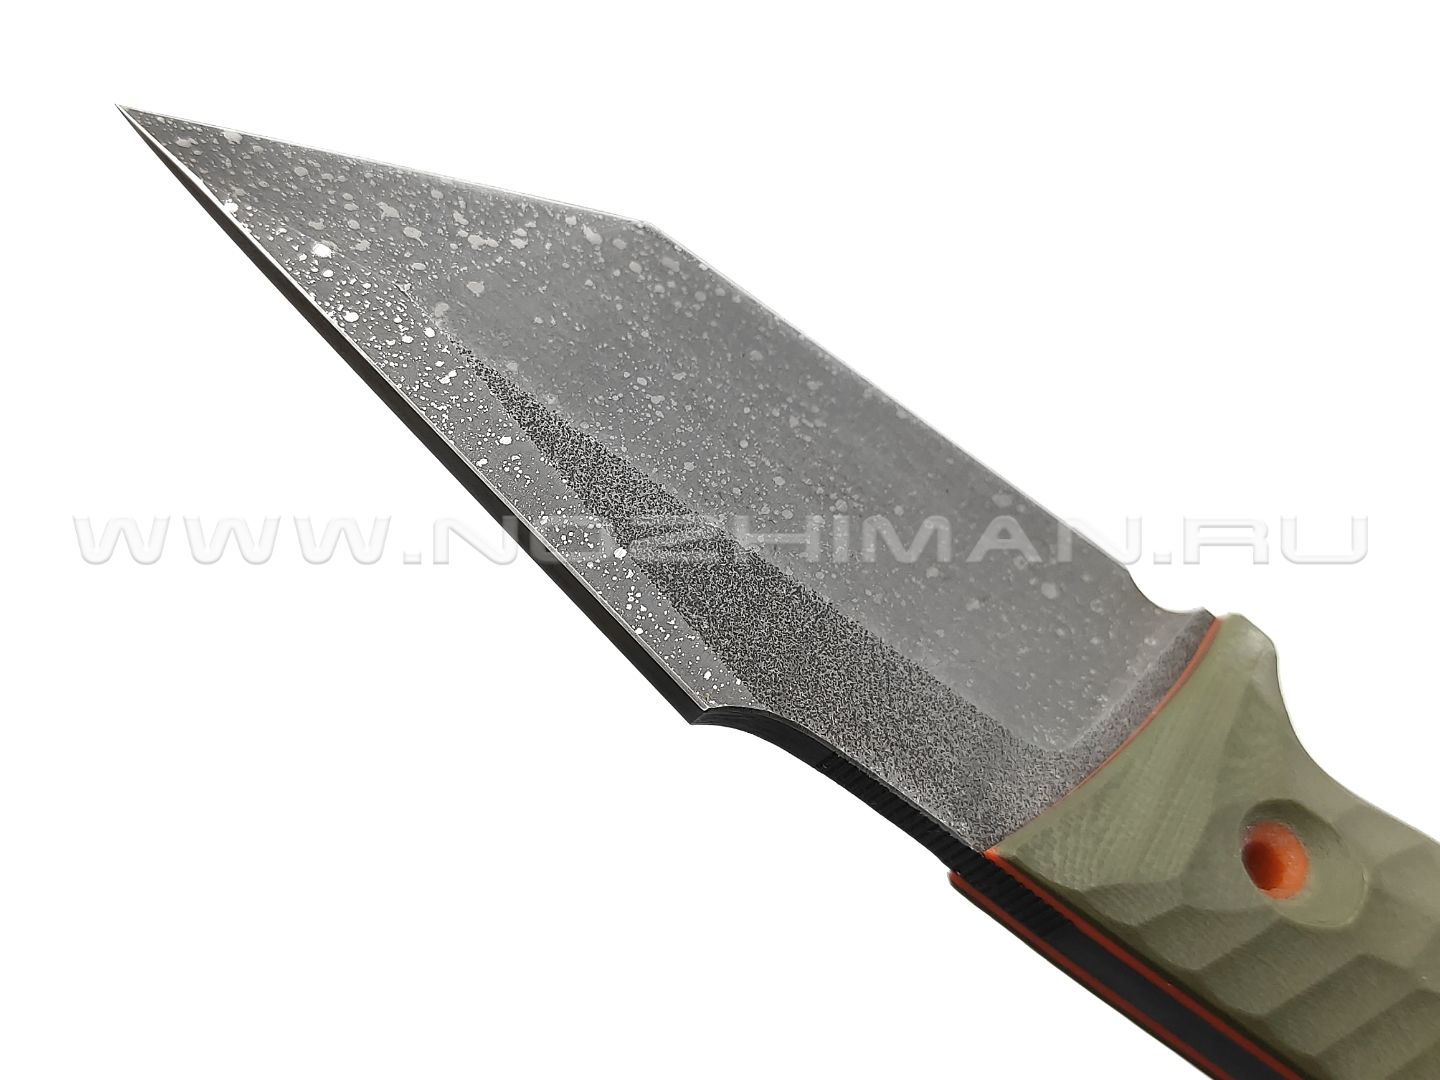 Dyag knives нож Model05_5 сталь N690, рукоять G10 olive